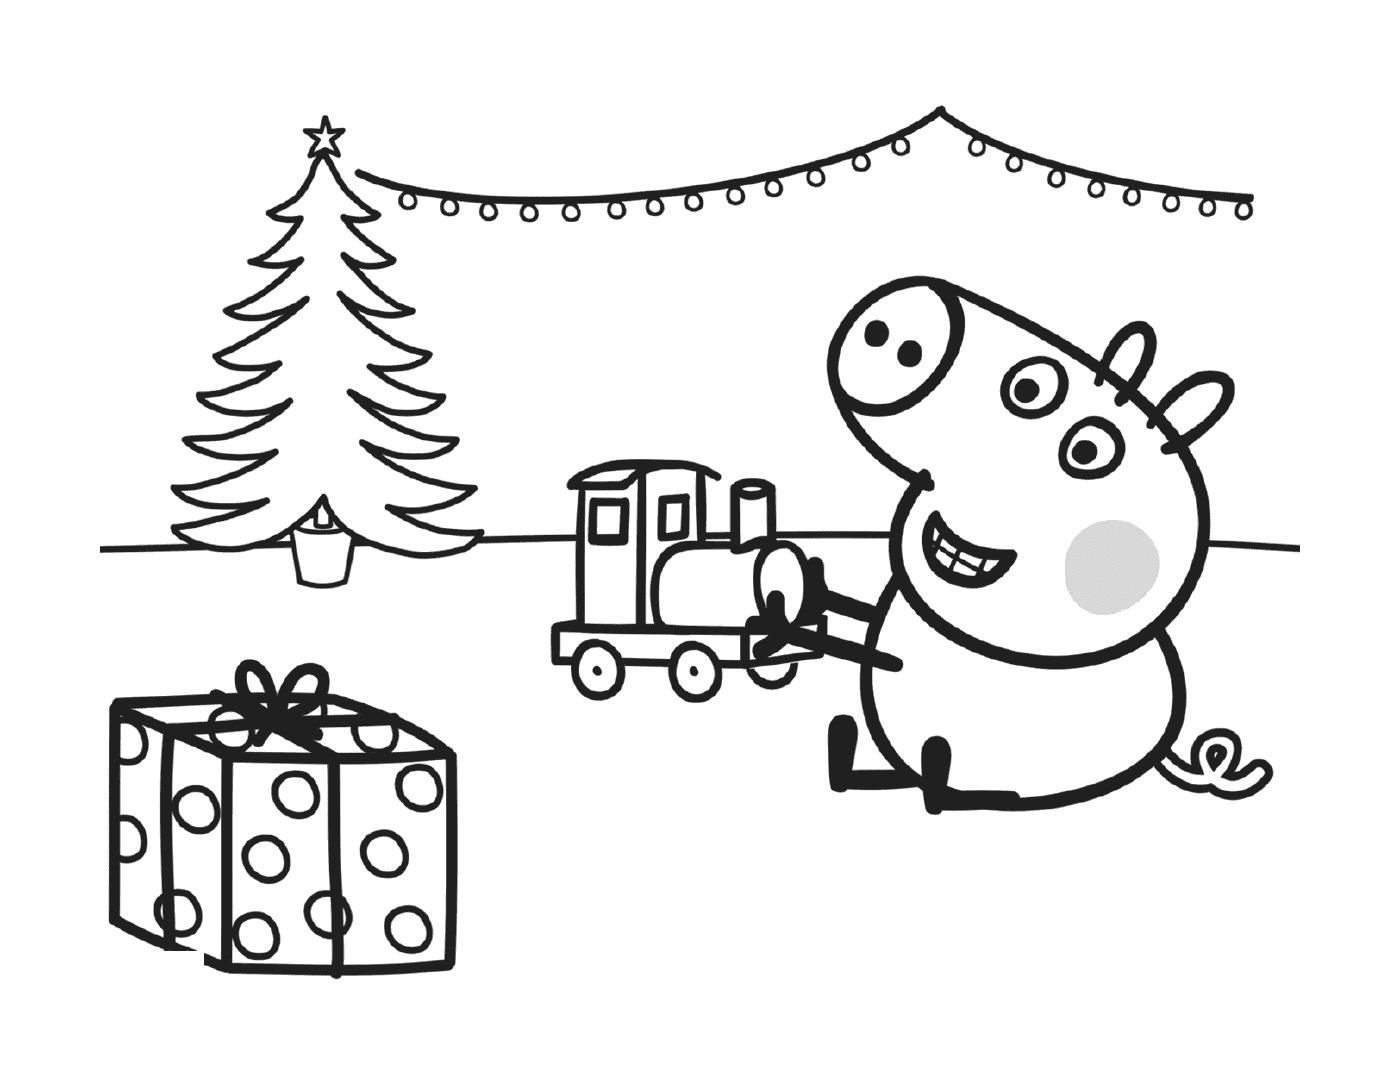  George juega con su regalo de Navidad, un tren 